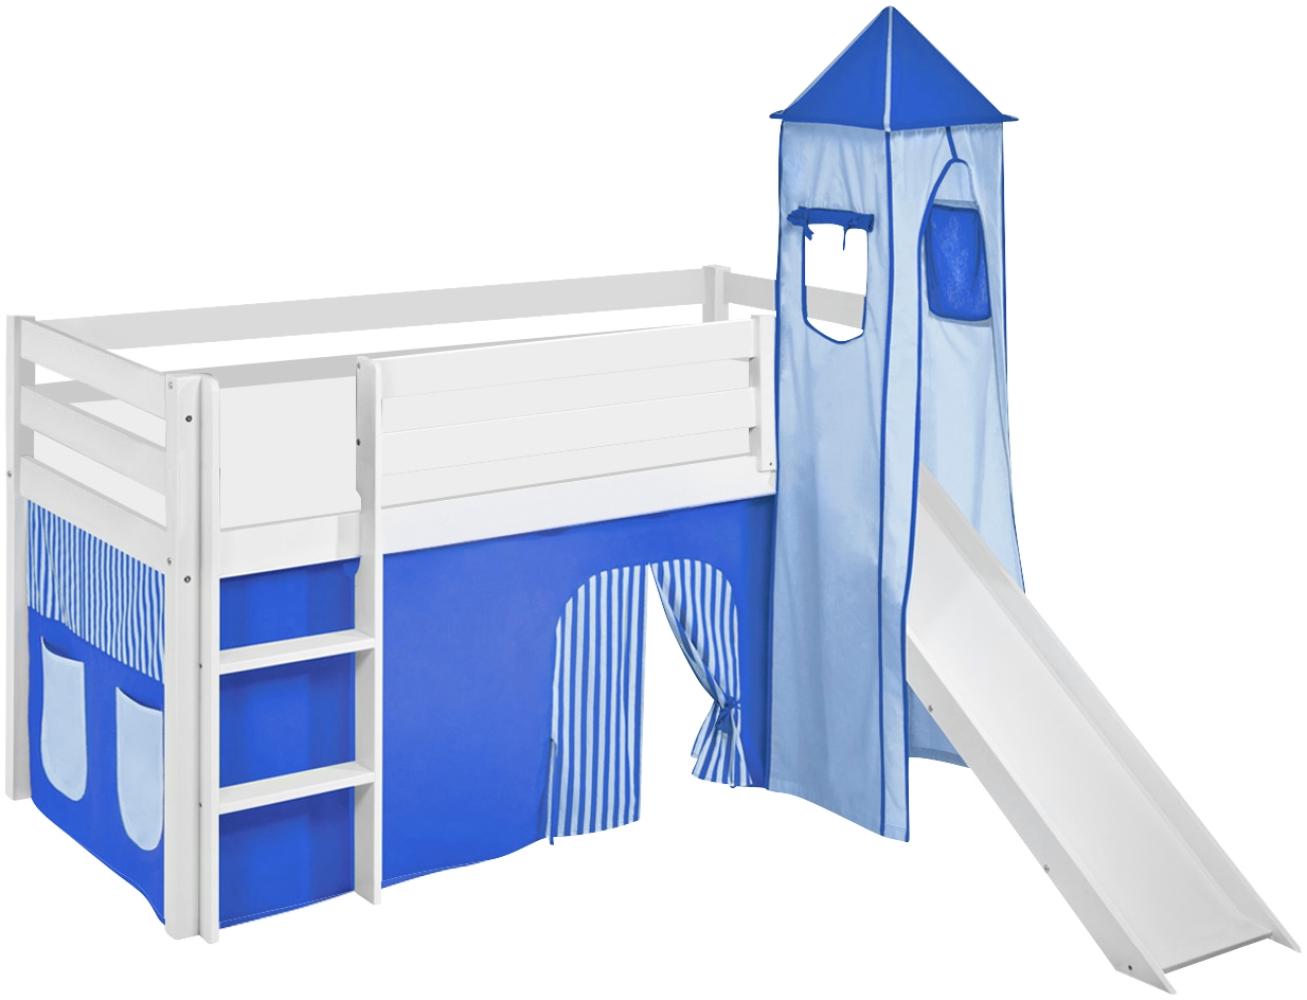 Lilokids 'Jelle' Spielbett 90 x 190 cm, Blau, Kiefer massiv, mit Turm, Rutsche und Vorhang Bild 1